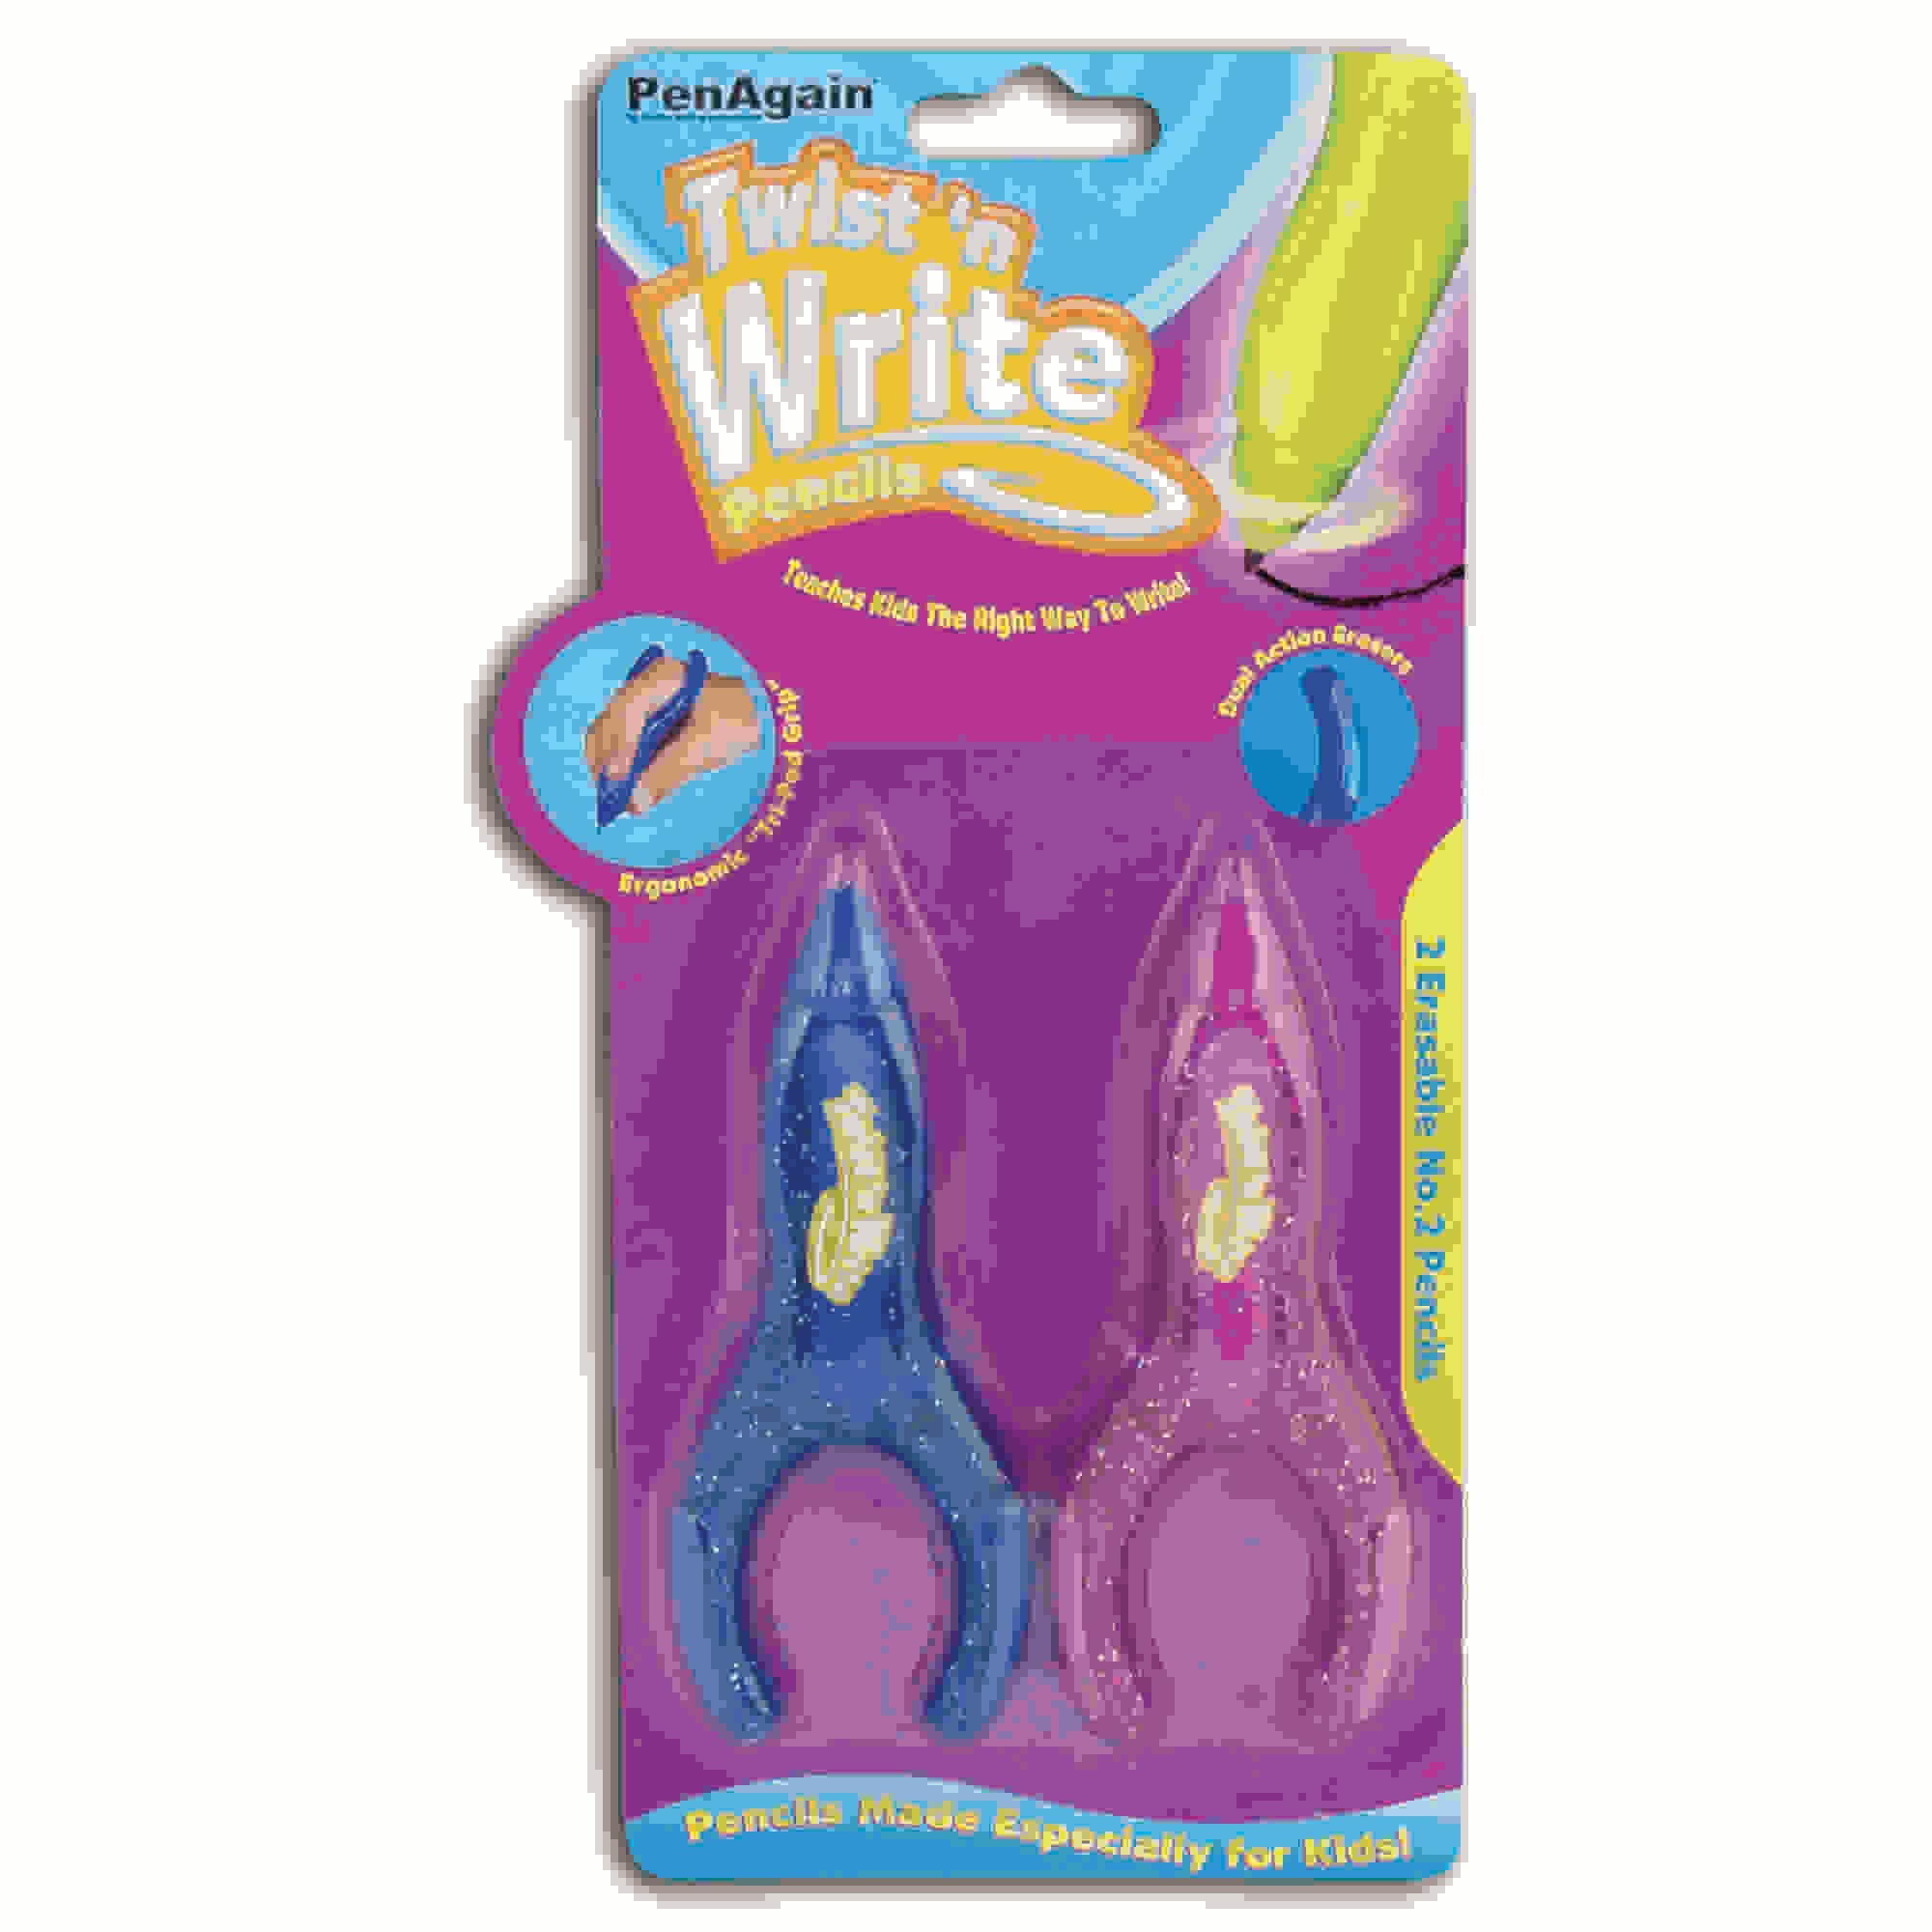 Twist 'n Write Pencils, Pack of 2